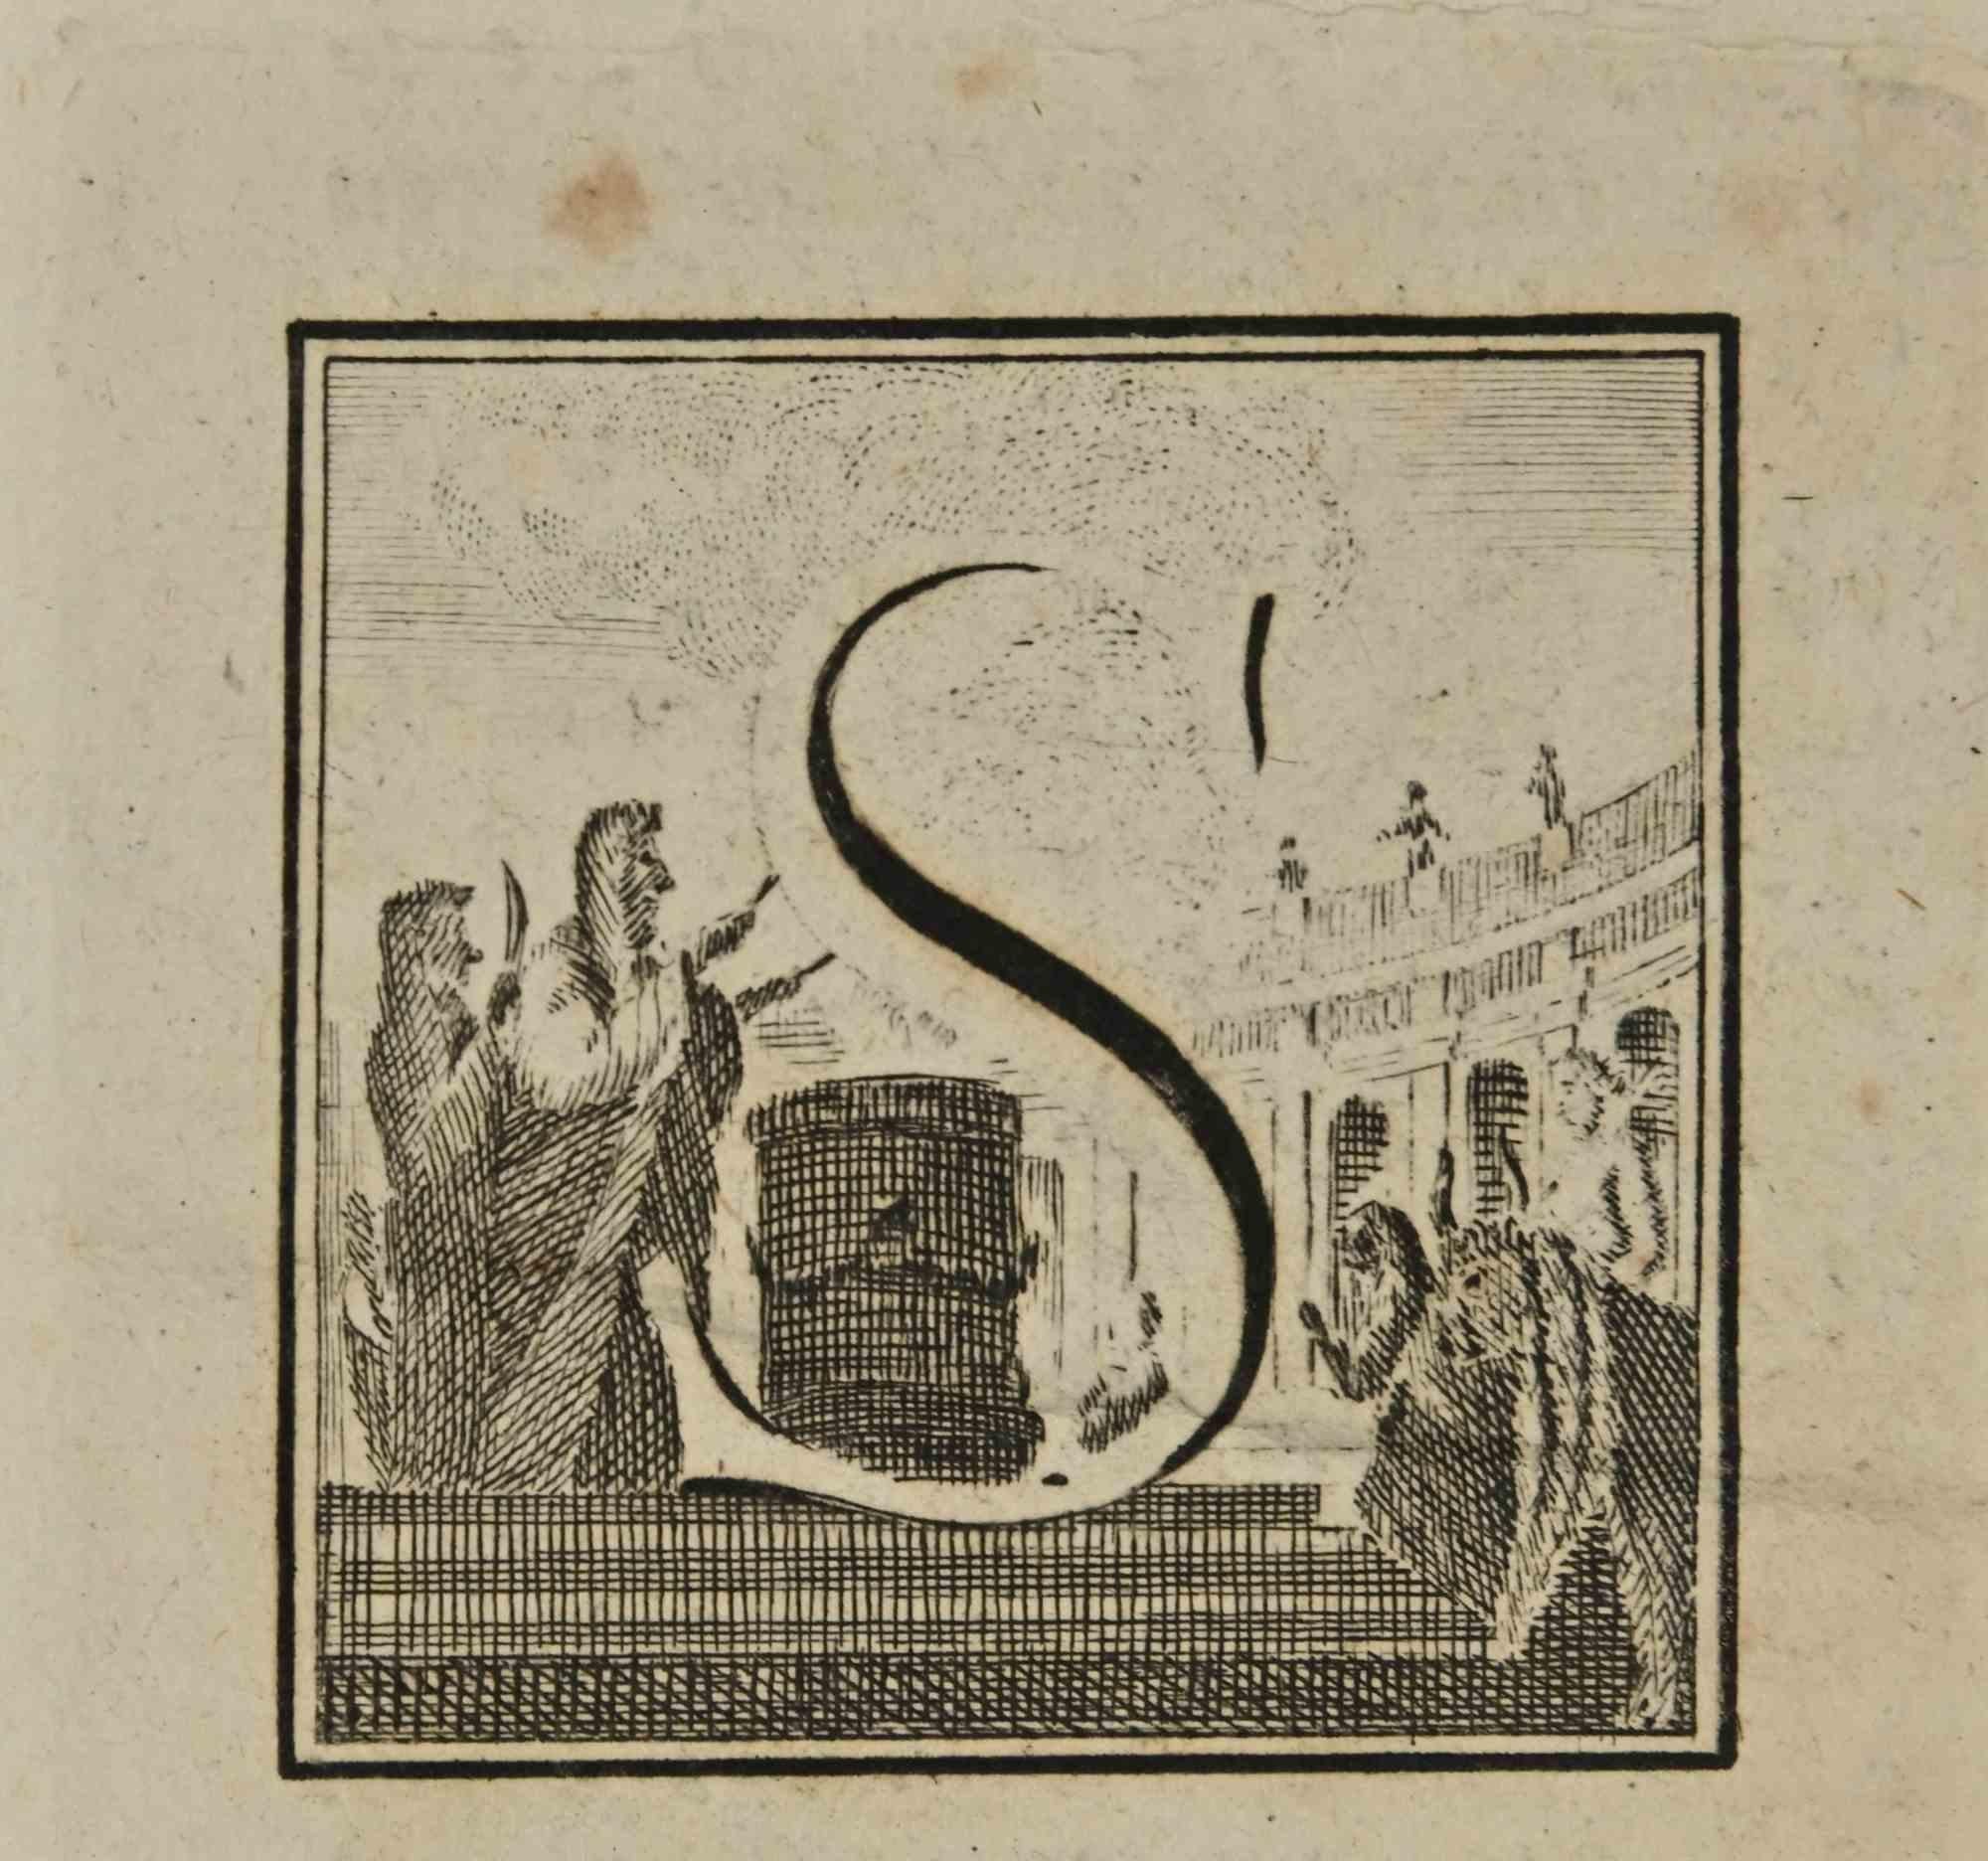 Buchstabe des Alphabets S,  aus der Serie "Altertümer von Herculaneum" ist eine Radierung auf Papier, die von Luigi Vanvitelli im 18.

Guter Zustand mit leichten Stockflecken.

Die Radierung gehört zu der Druckserie "Antiquities of Herculaneum